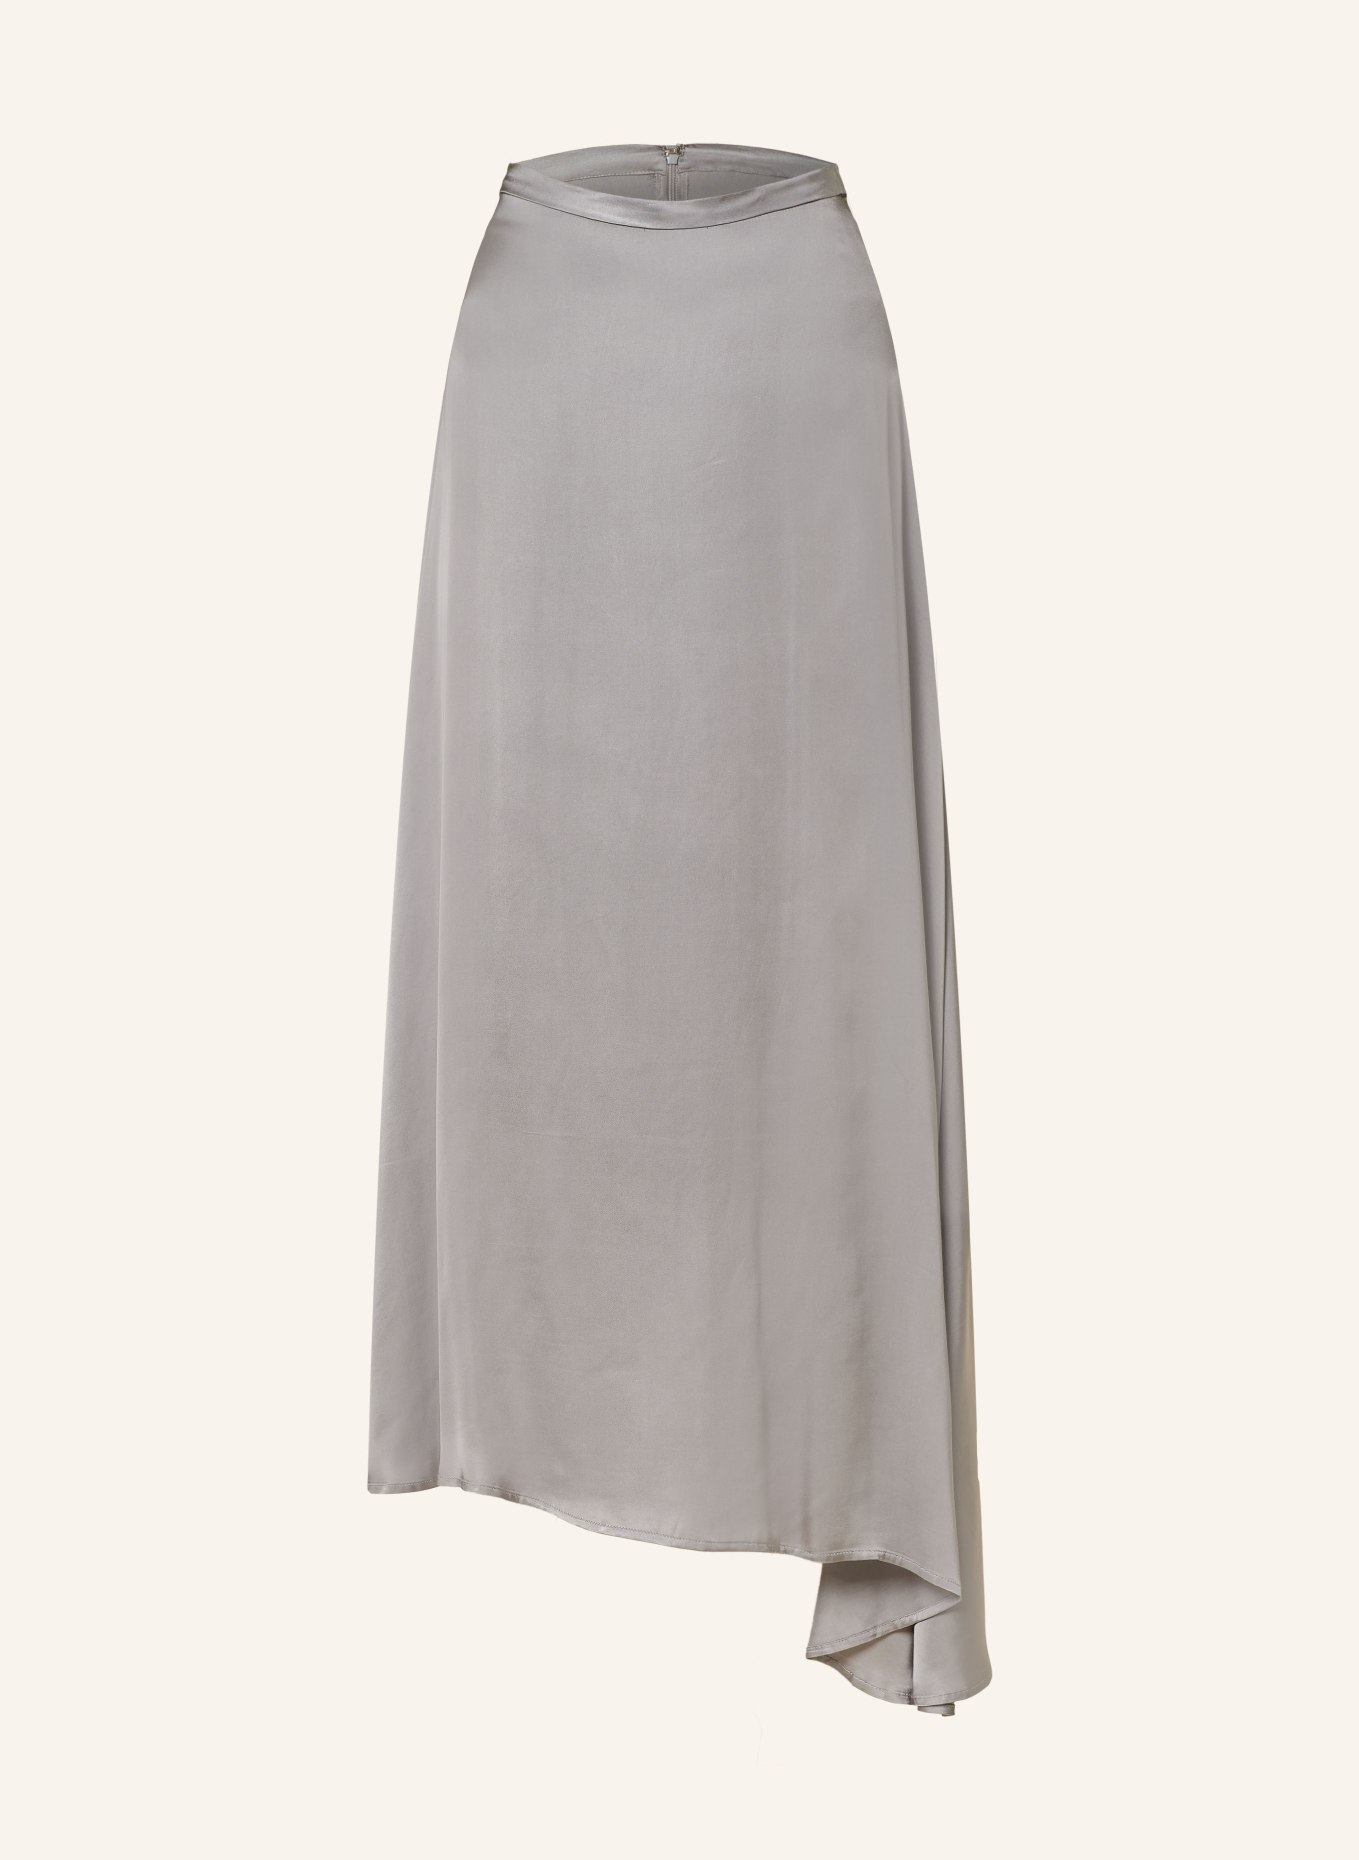 Herskind Satin skirt SILLE, Color: GRAY (Image 1)